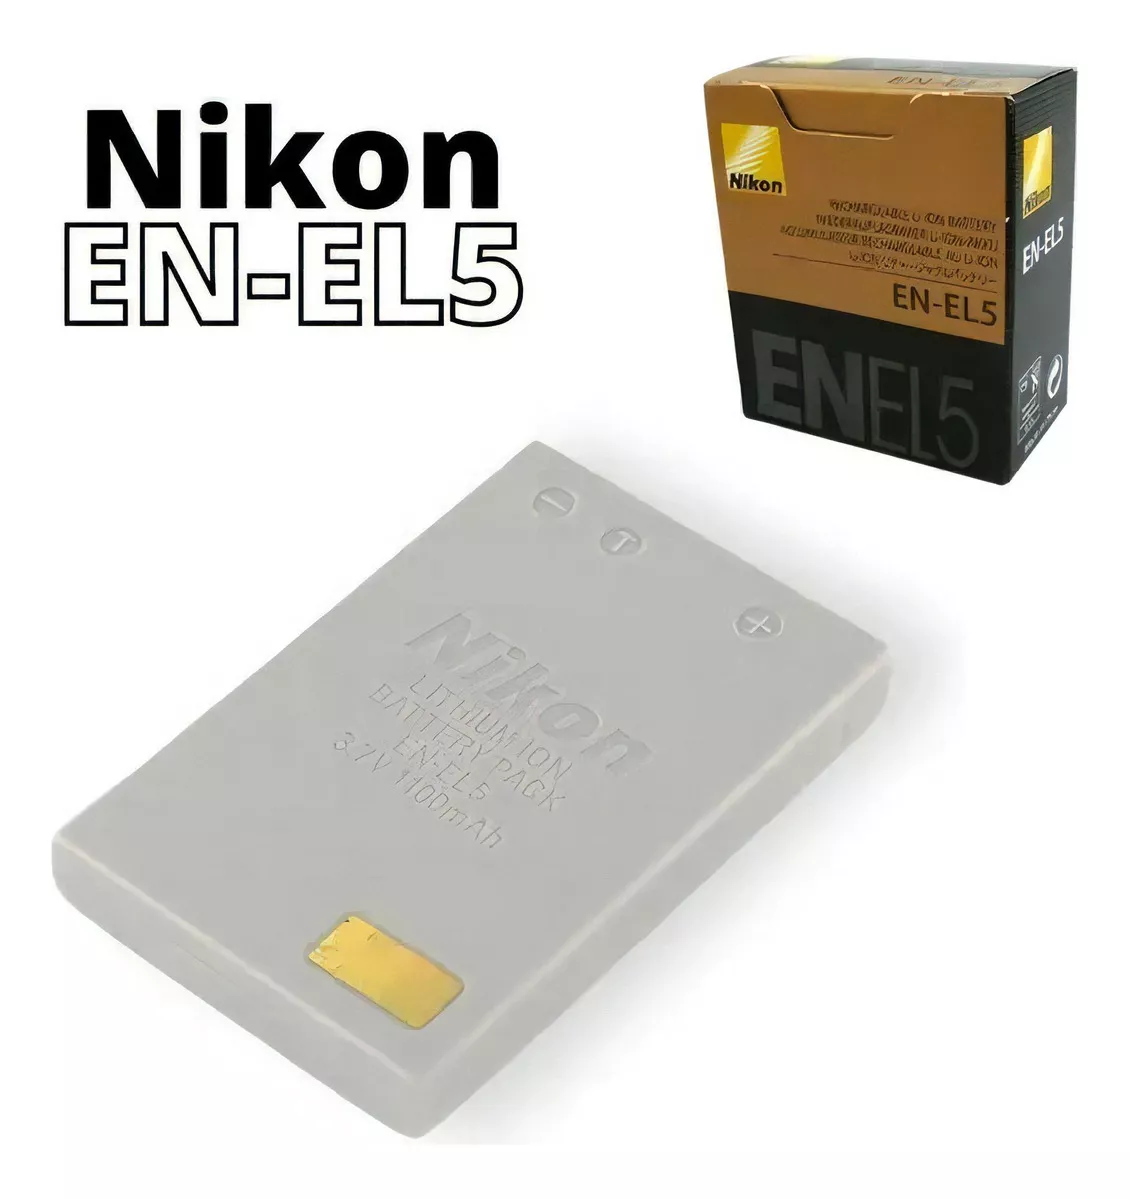 Primeira imagem para pesquisa de bateria nikon p520